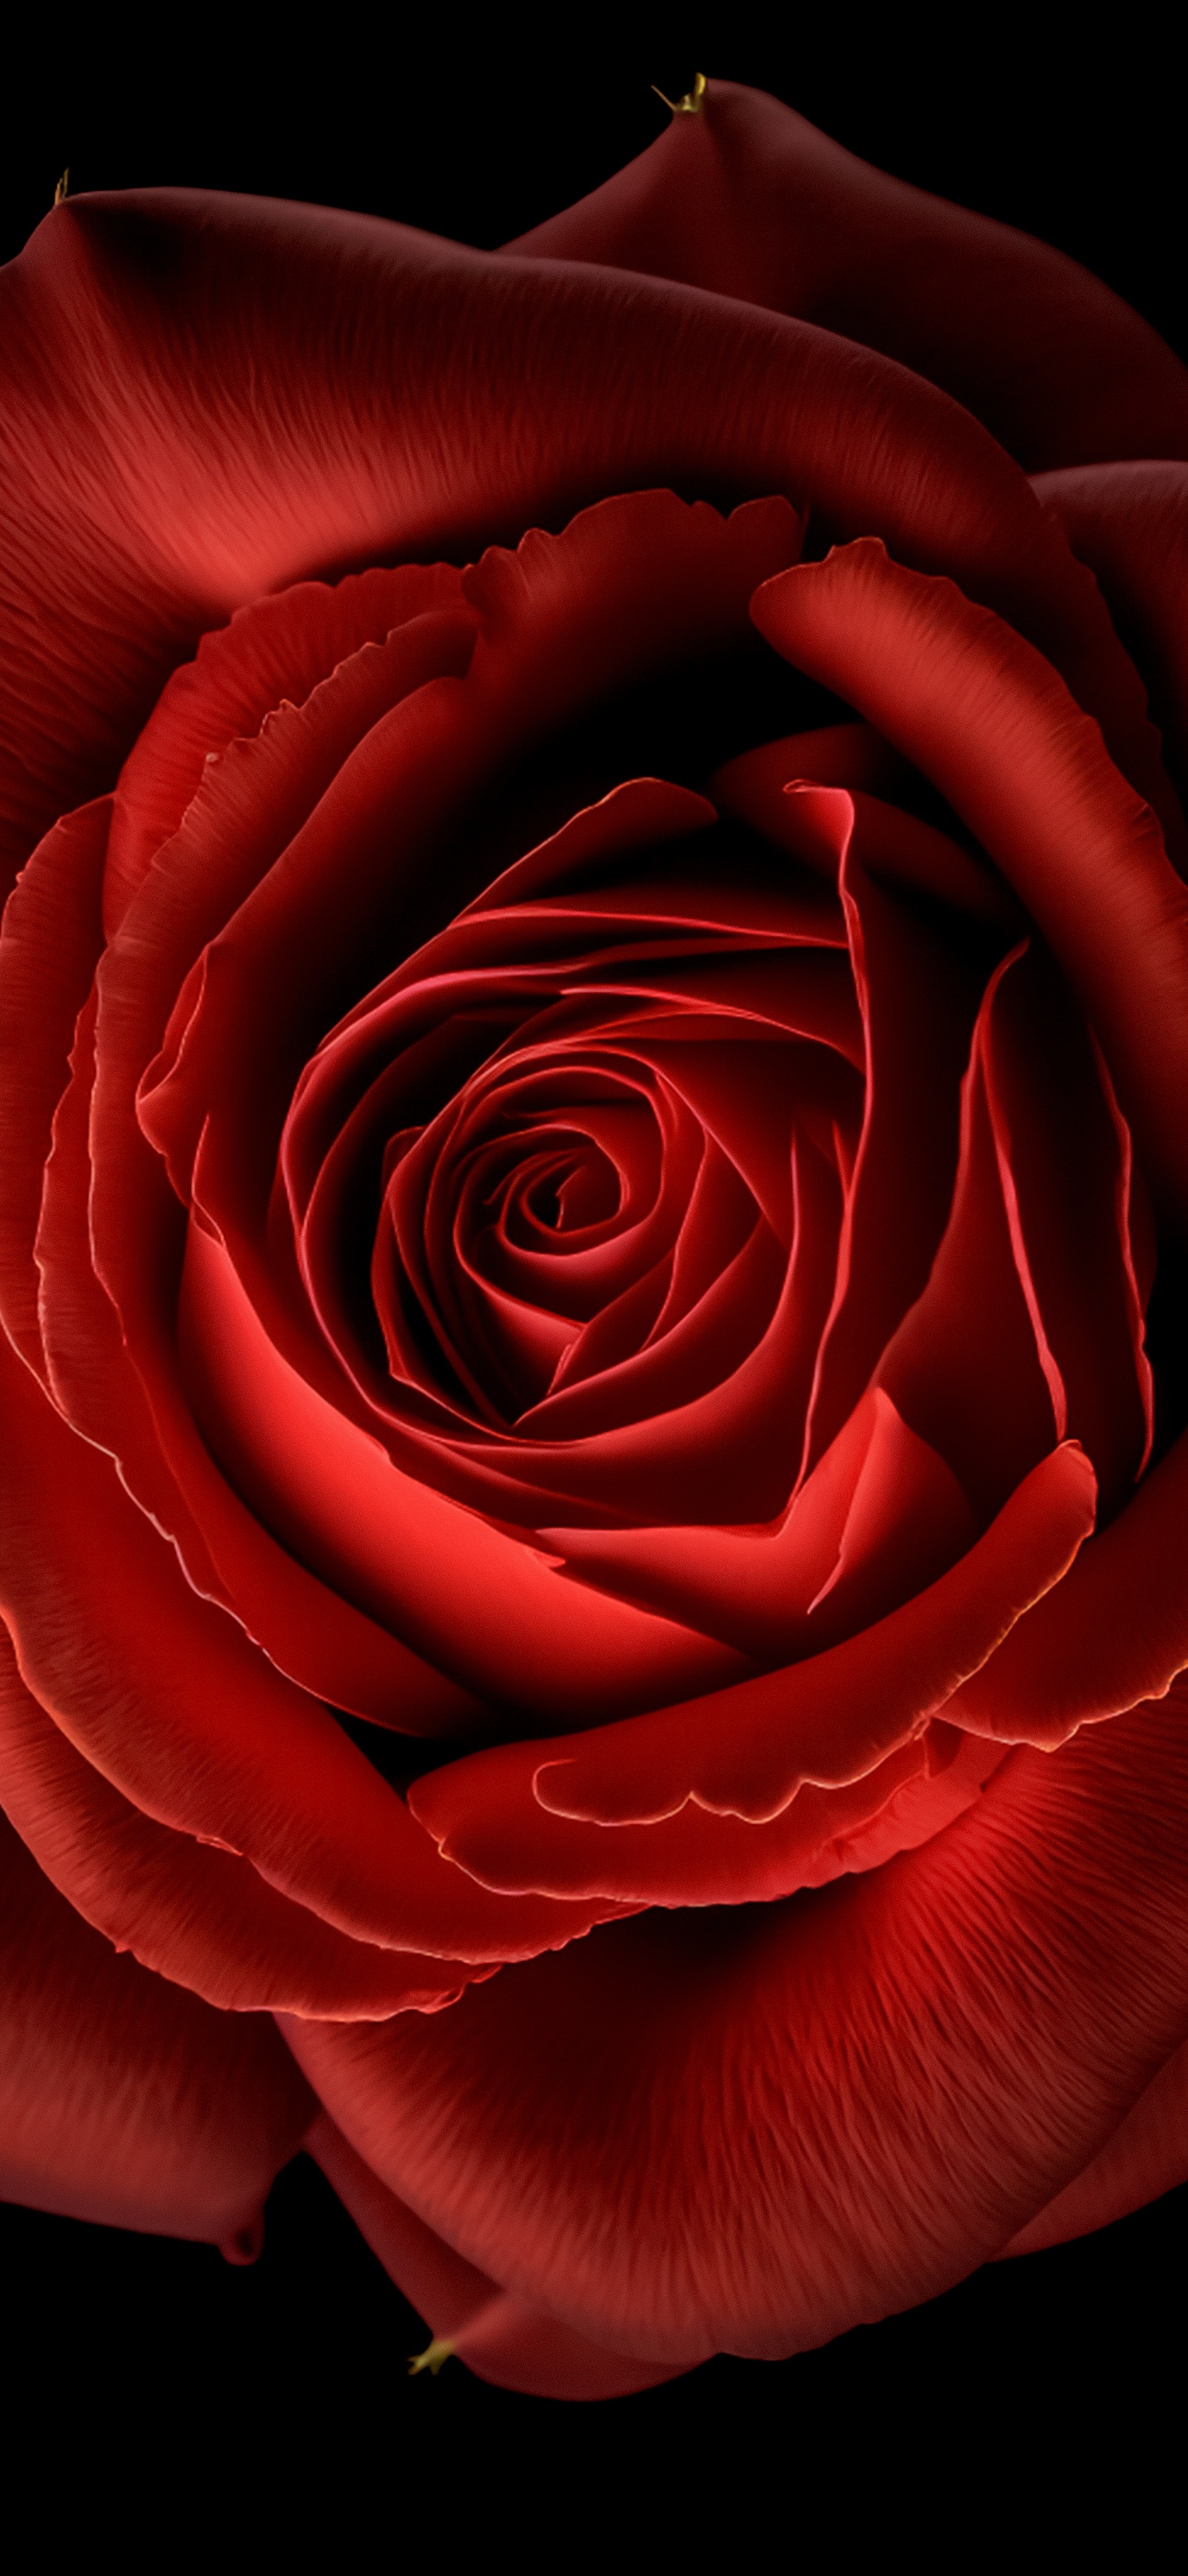 red roses wallpaper for desktop